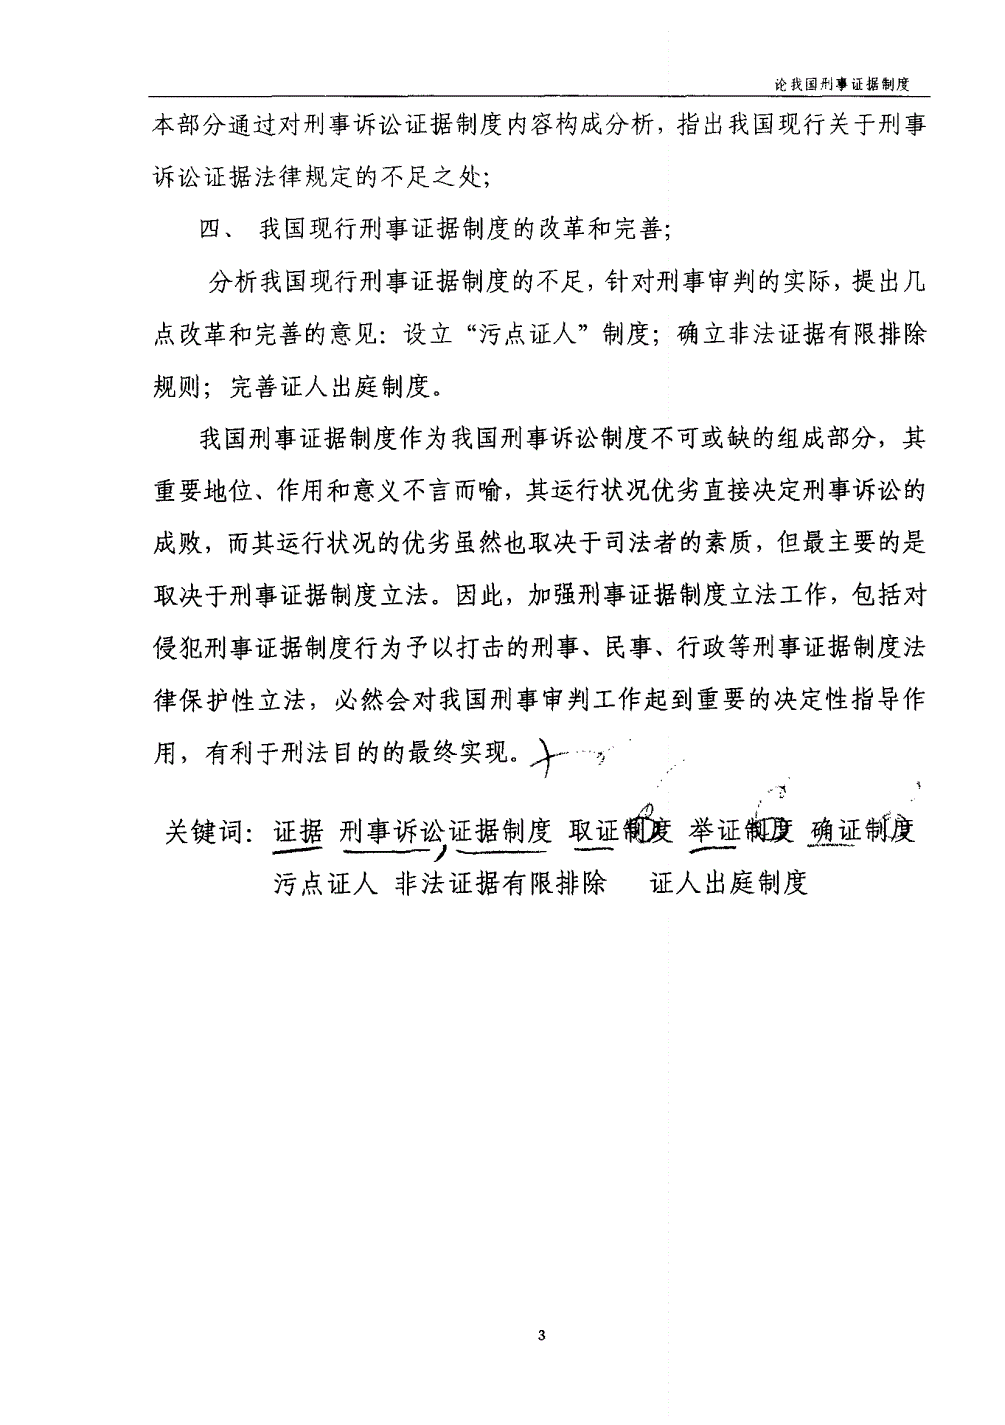 轻伤害案件刑事和解_刑事案件律师_滨州刑事案子律师最牛的律师